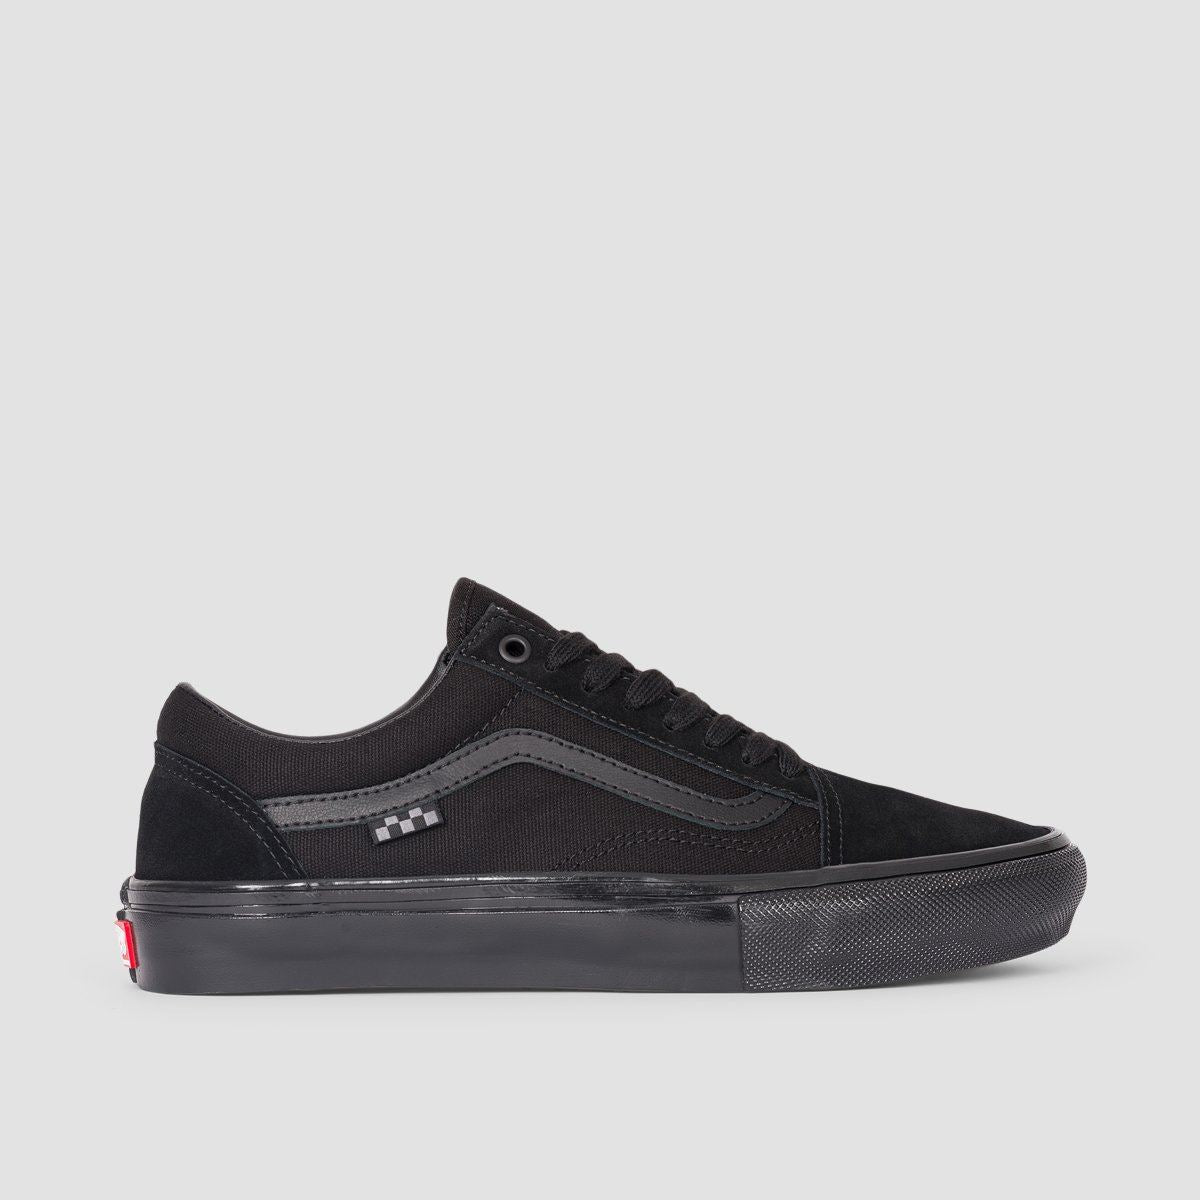 Vans Skate Old Skool Shoes - Black/Black